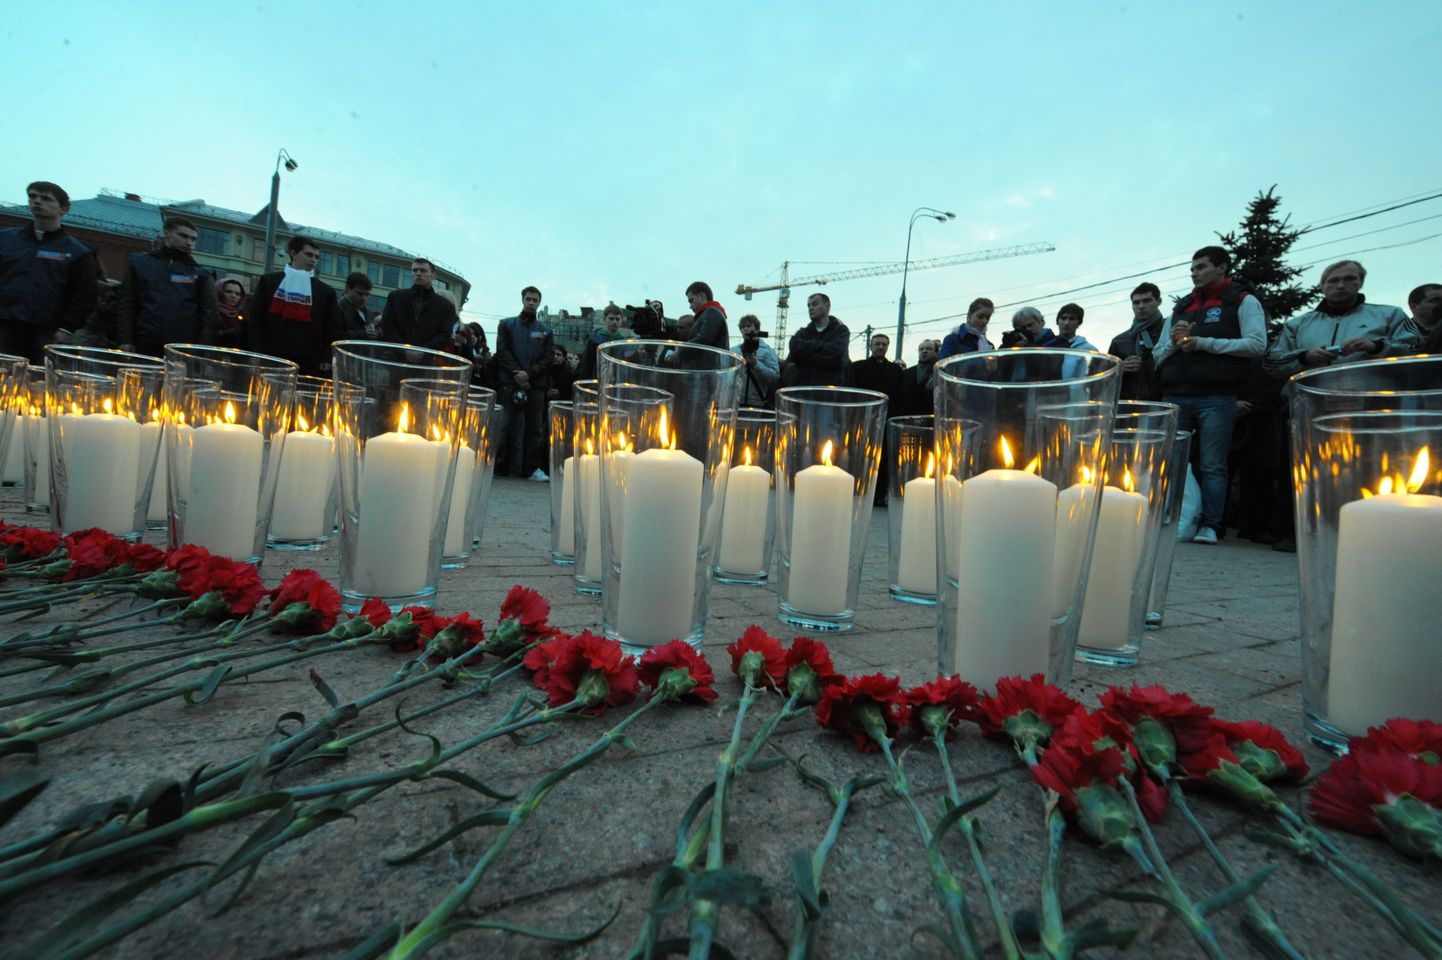 Park Kulturõ ja Lubjanka terroriaktides hukkus 40 inimest.